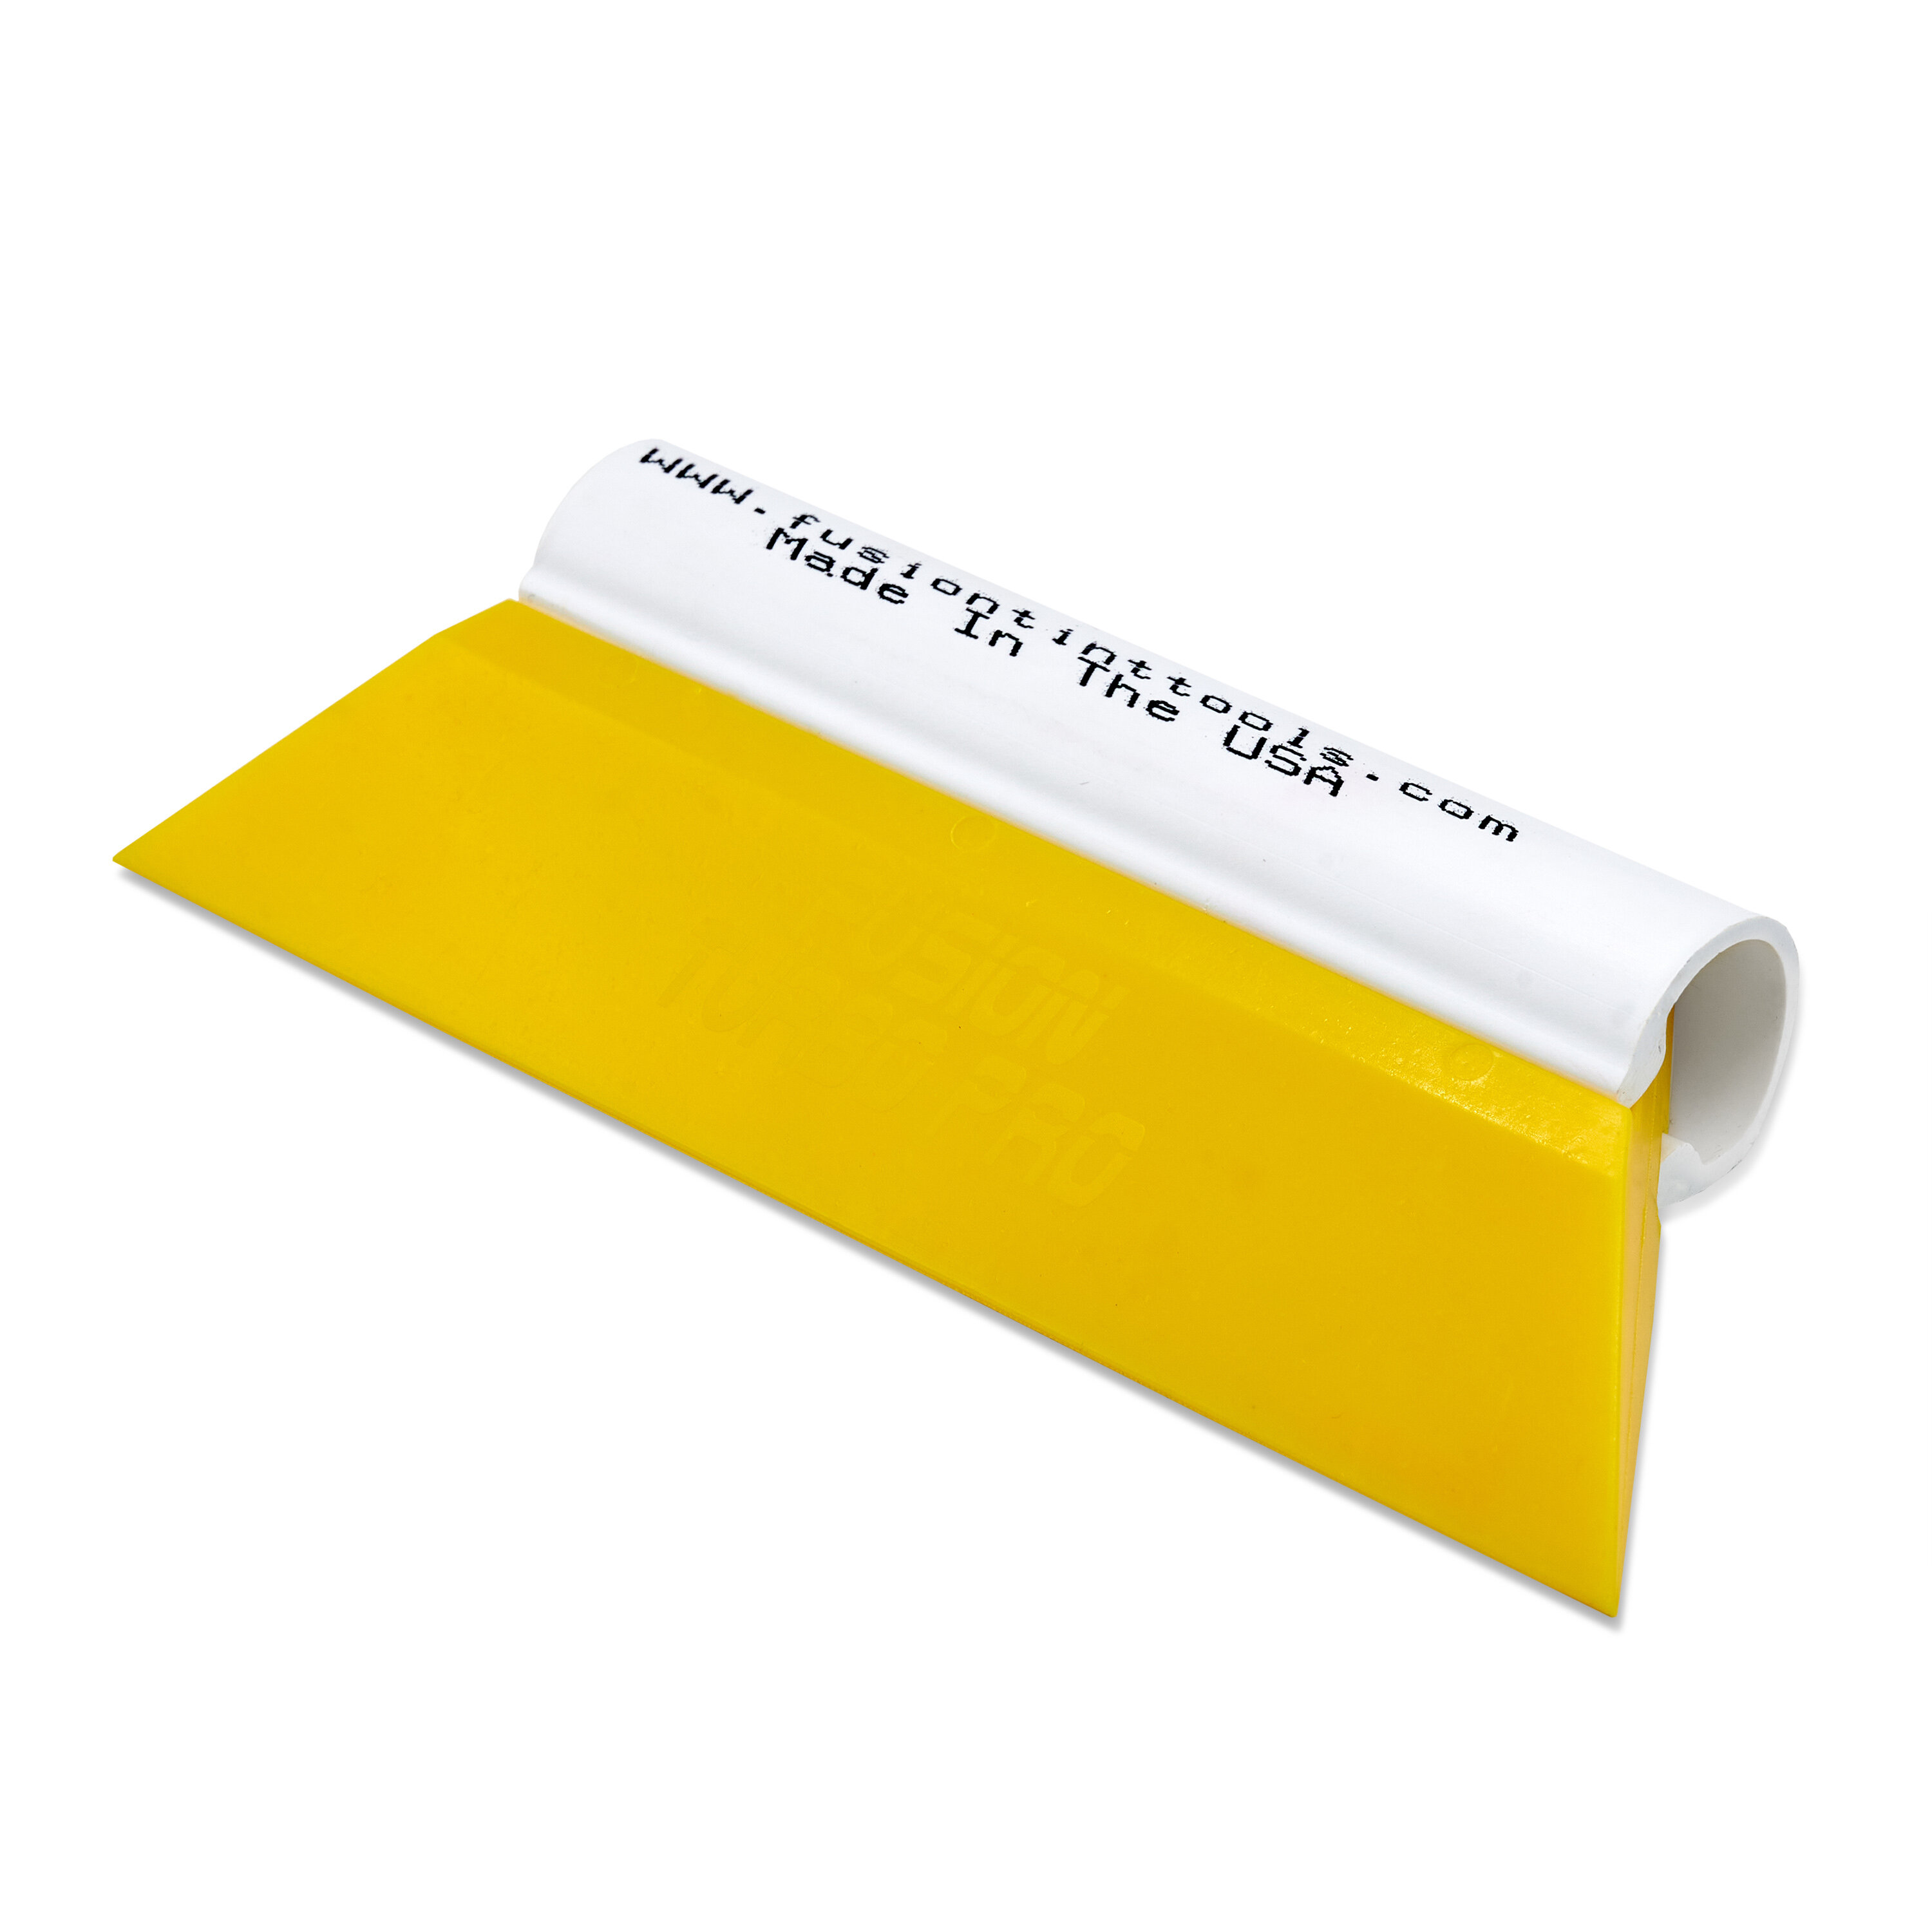 Выгонка FUSION TURBO PRO желтая (85) с пластиковой ручкой 14 см.